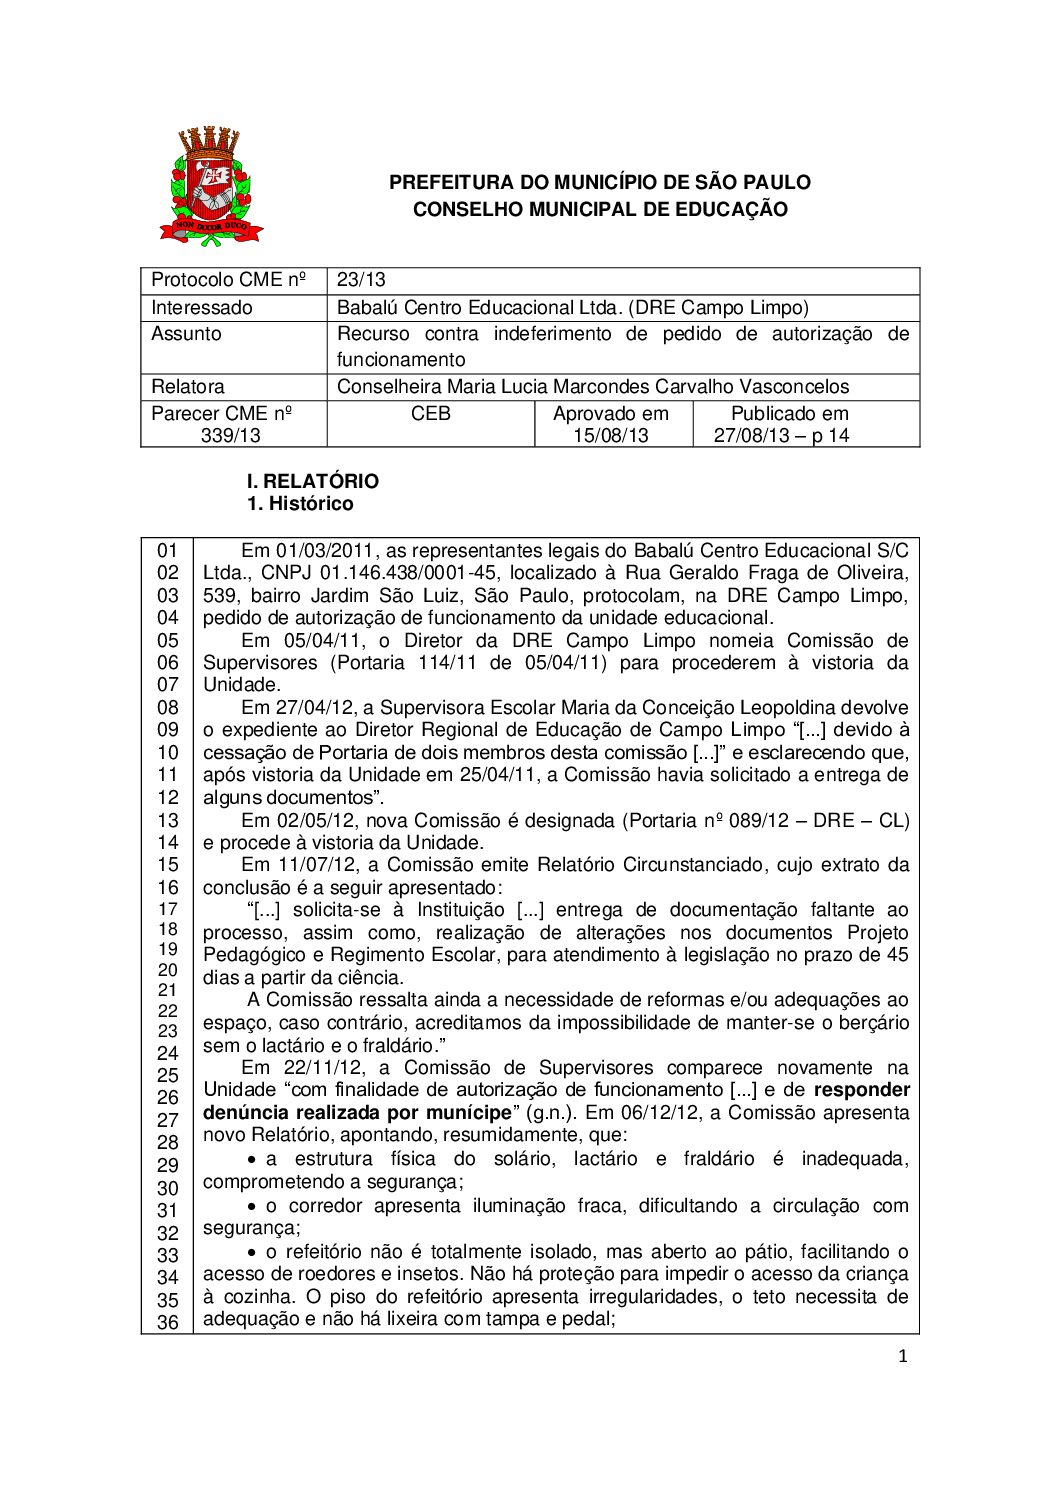 Parecer CME nº 339/2013 - Babalú Centro Educacional Ltda (DRE Campo Limpo) - Recurso contra indeferimento de pedido de autorização de funcionamento 